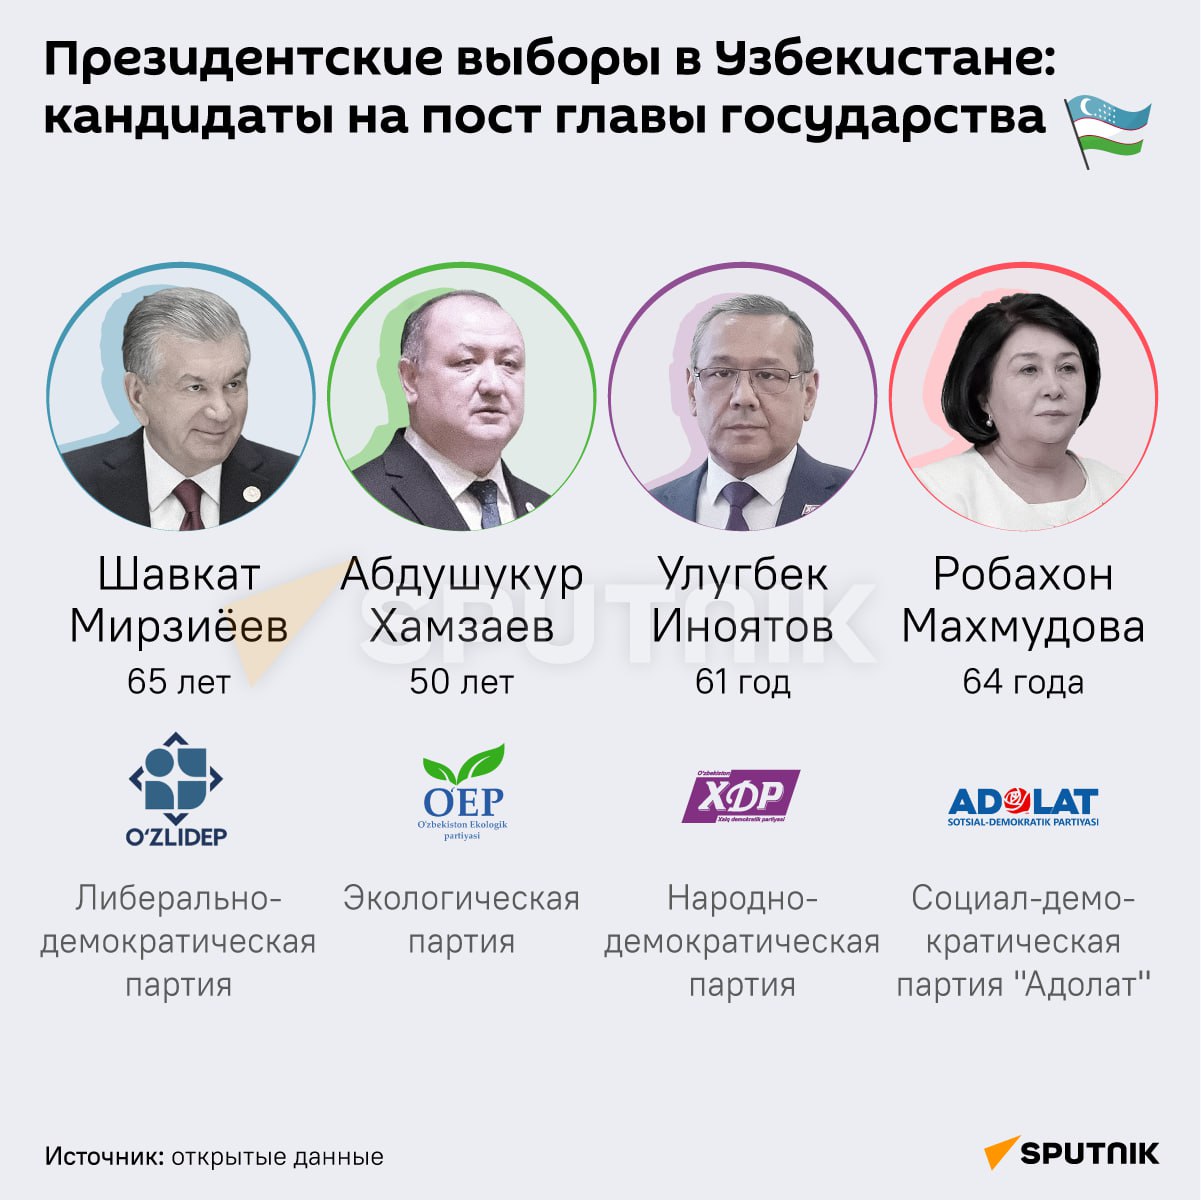 Как проголосовали в 2024г. Президентские выборы в Узбекистане.